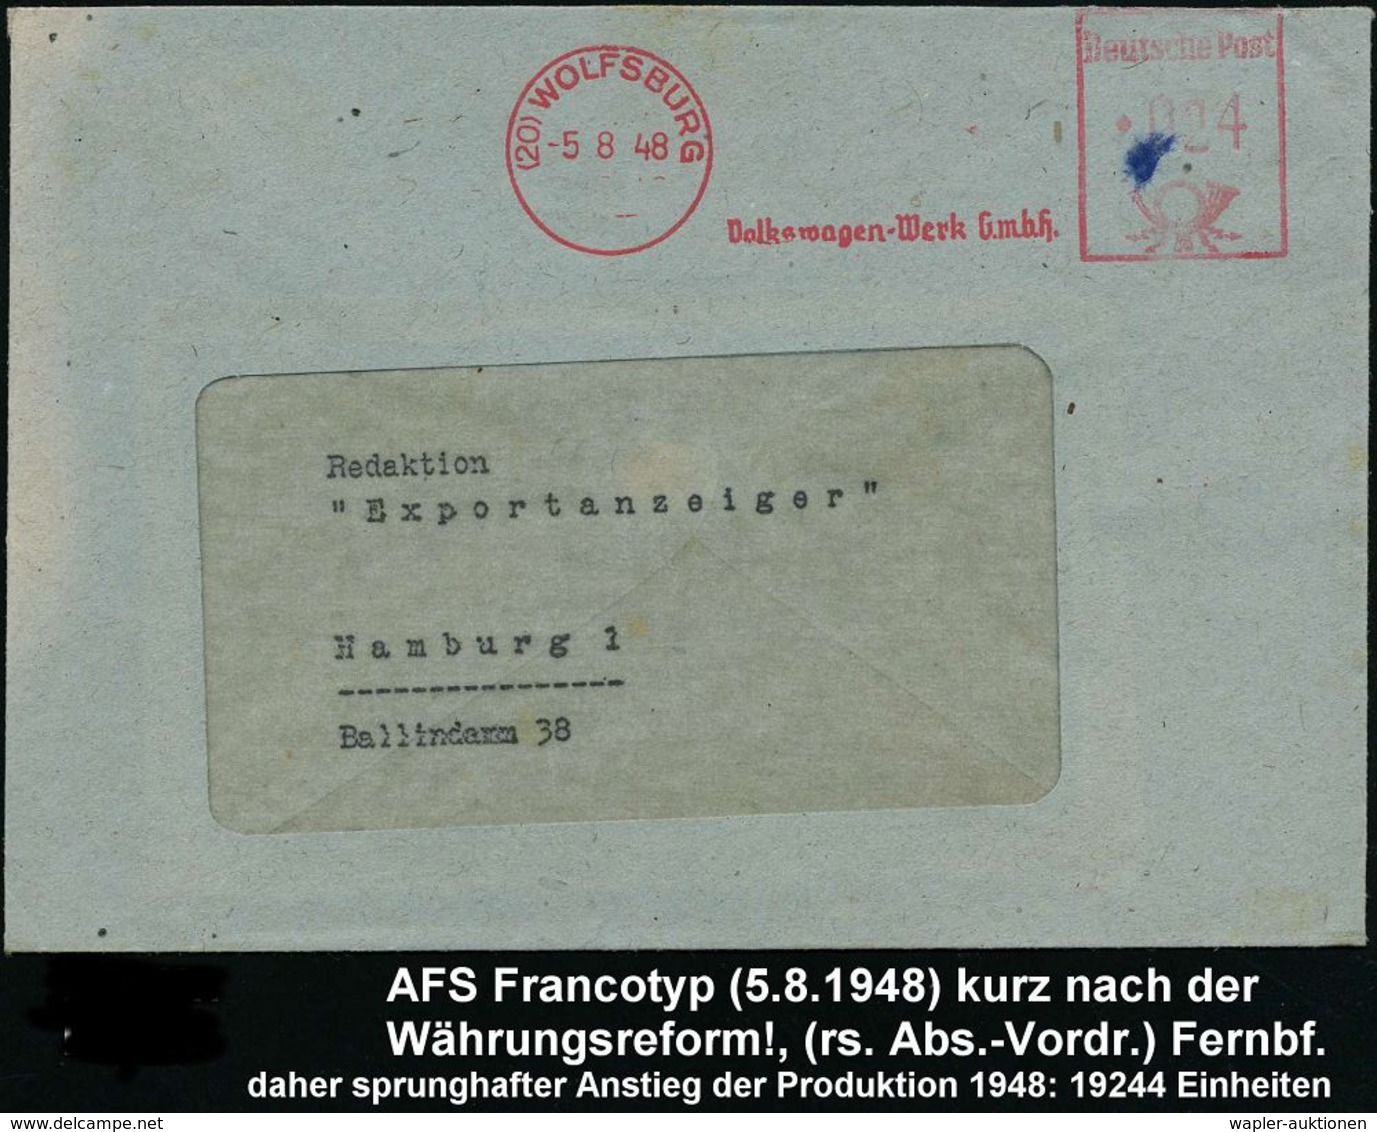 VOLKSWAGEN / VW / K.-D.-F.-WAGEN / PORSCHE : (20) WOLFSBURG/ Volkswagen-Werk GmbH 1948 (5.8.) AFS, Rs. Abs.-Vordruck Aus - Voitures